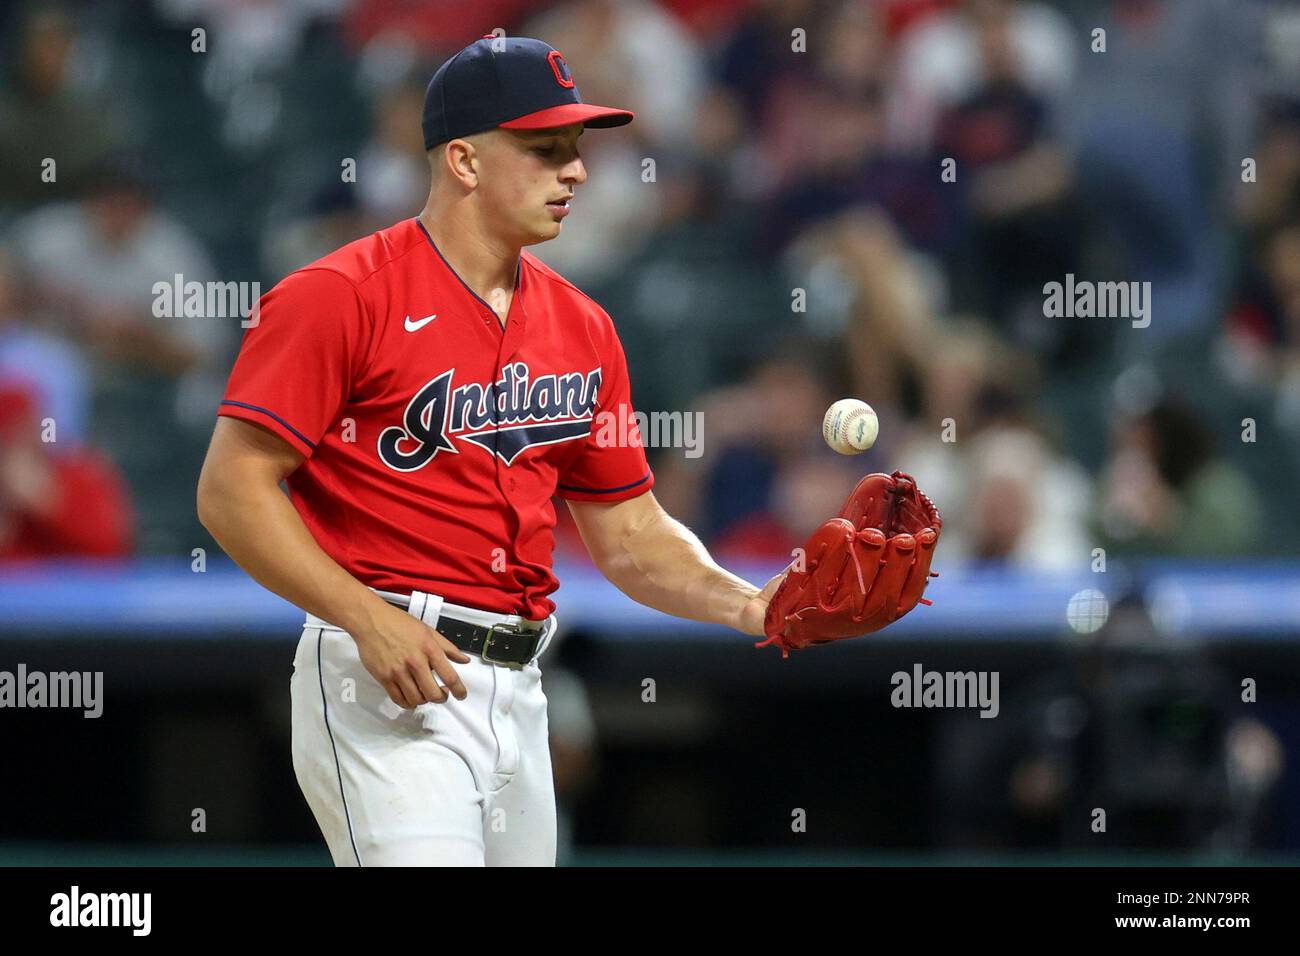 CLEVELAND, OH - JUNE 14: Cleveland Indians pitcher James Karinchak